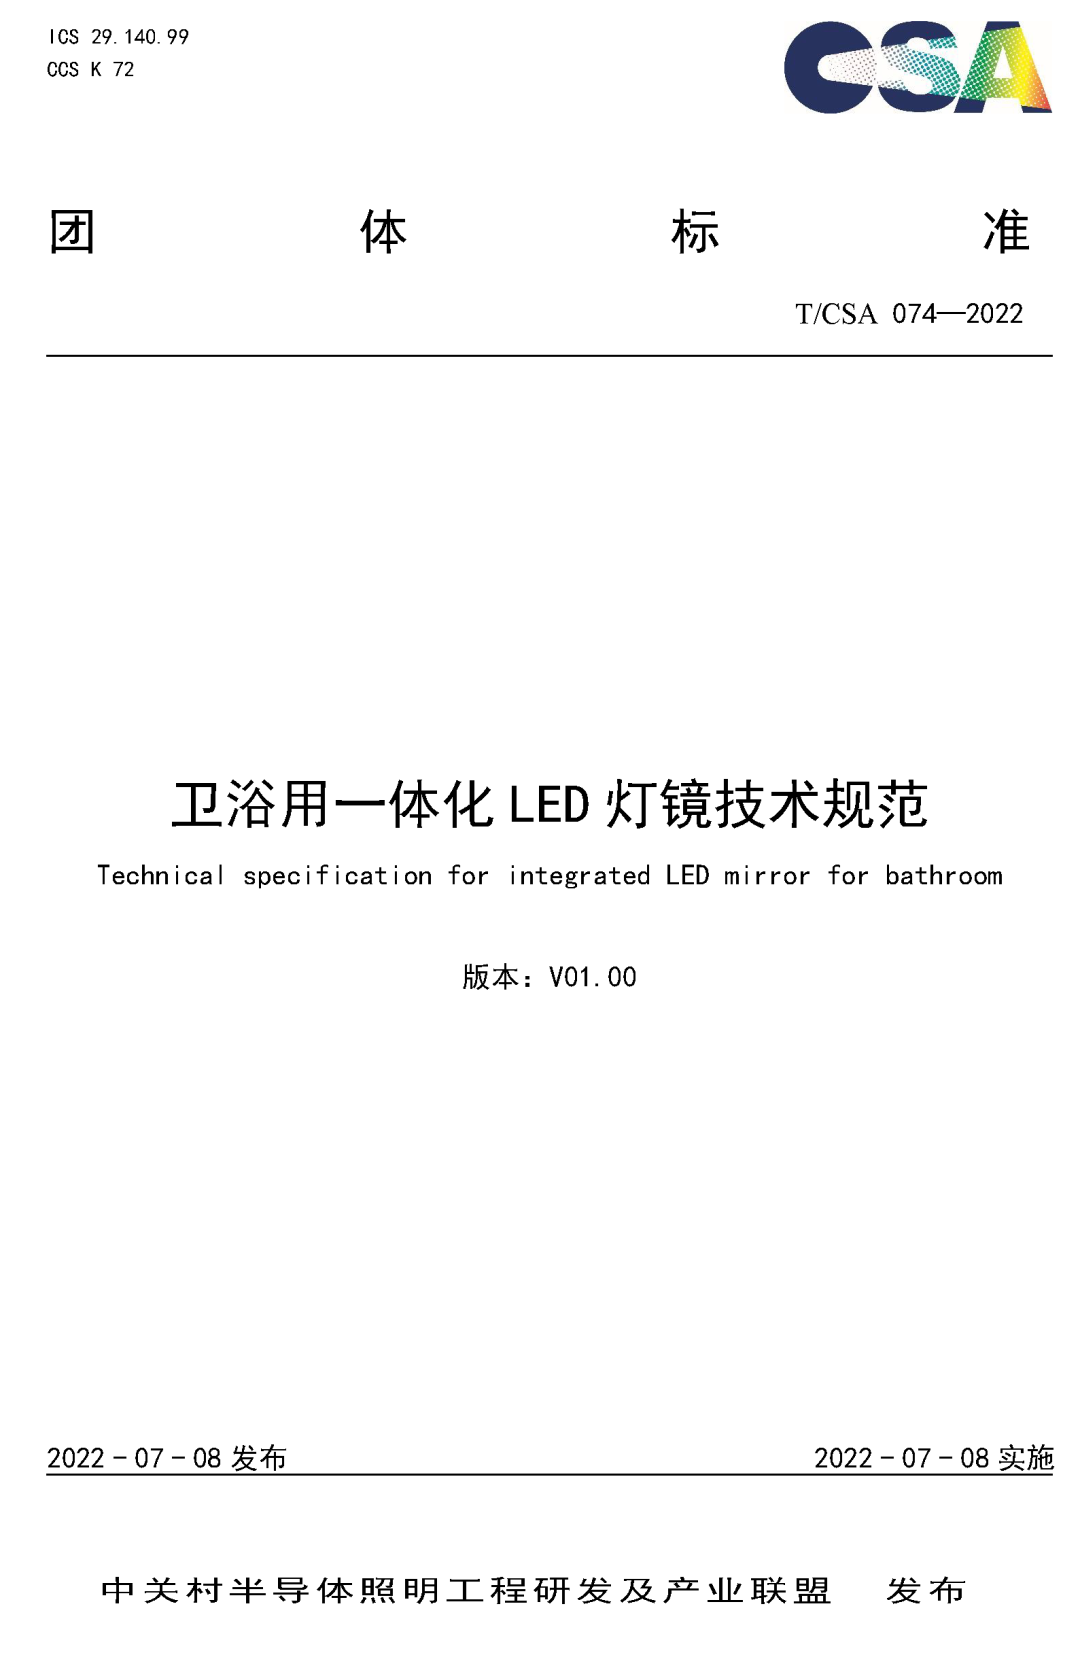 “卫浴用一体化LED灯镜技术规范”团体标准正式发布